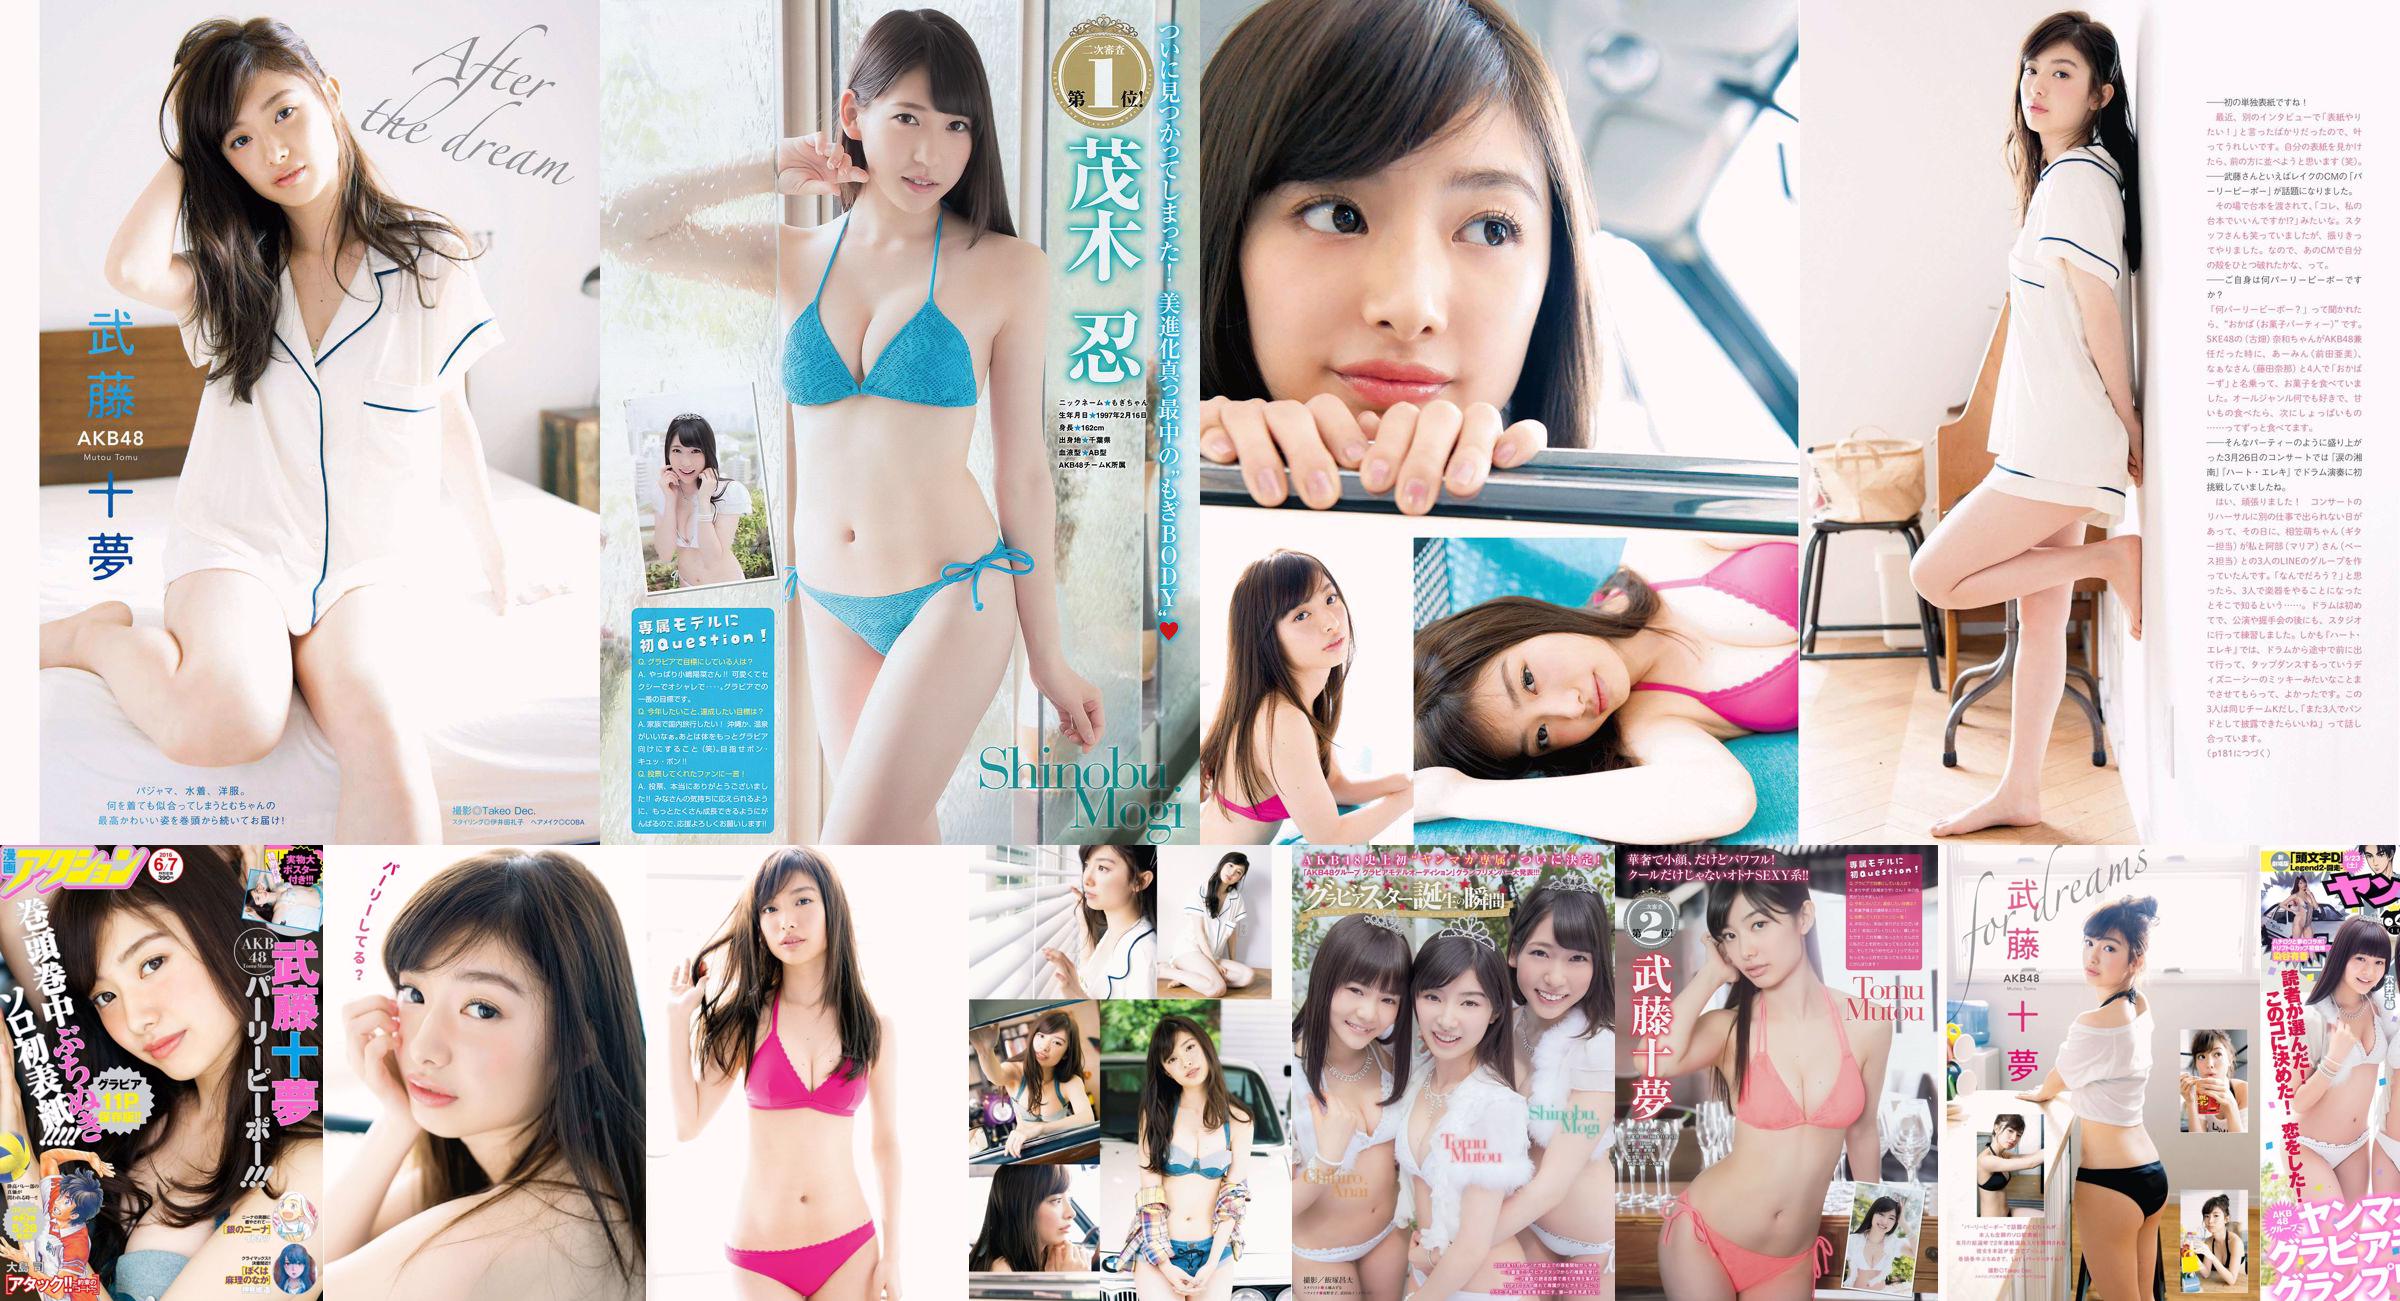 [Young Magazine] Tomu Muto Shinobu Mogi Chihiro Anai Erina Mano Yuka Someya 2015 No.25 Photograph No.3ab788 หน้า 3